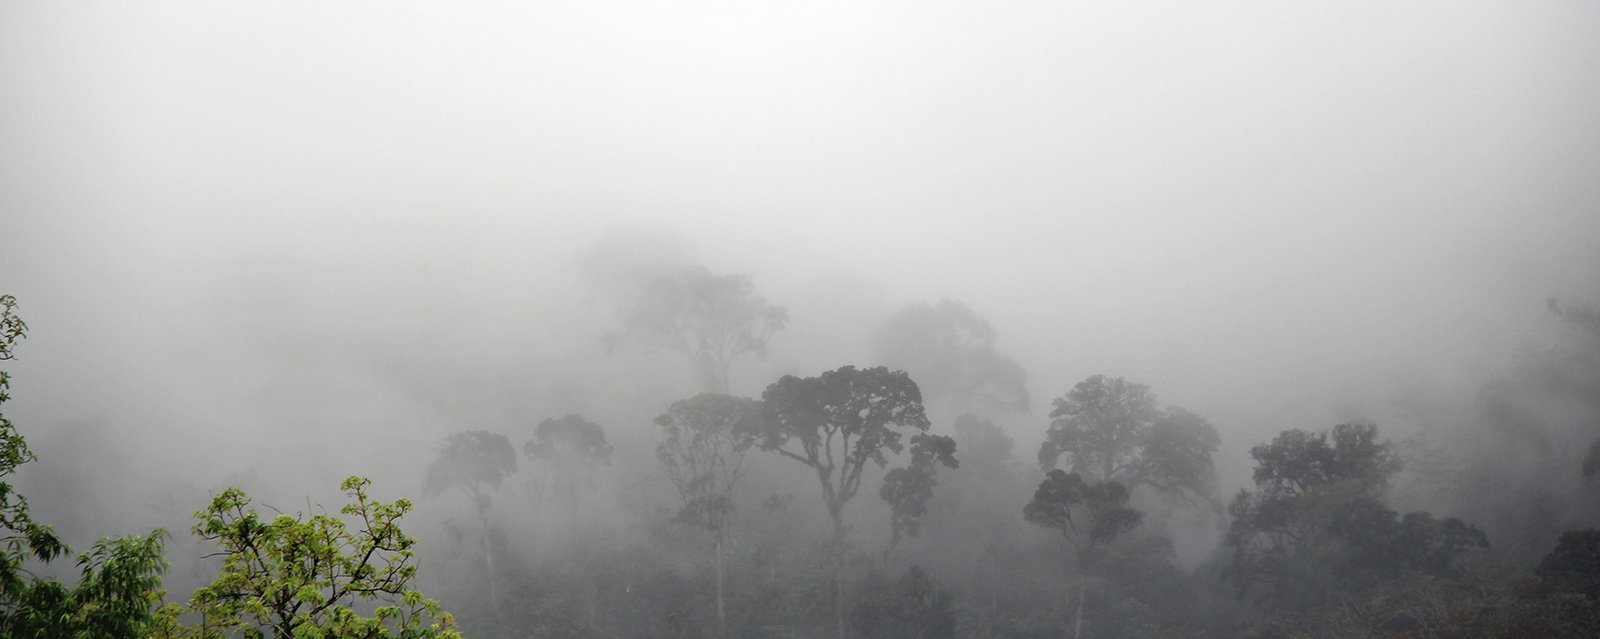 Der Nebel erhebt sich morgens aus dem Regenwald oder umgekehrt ... der Regenwald verschwindet lansam